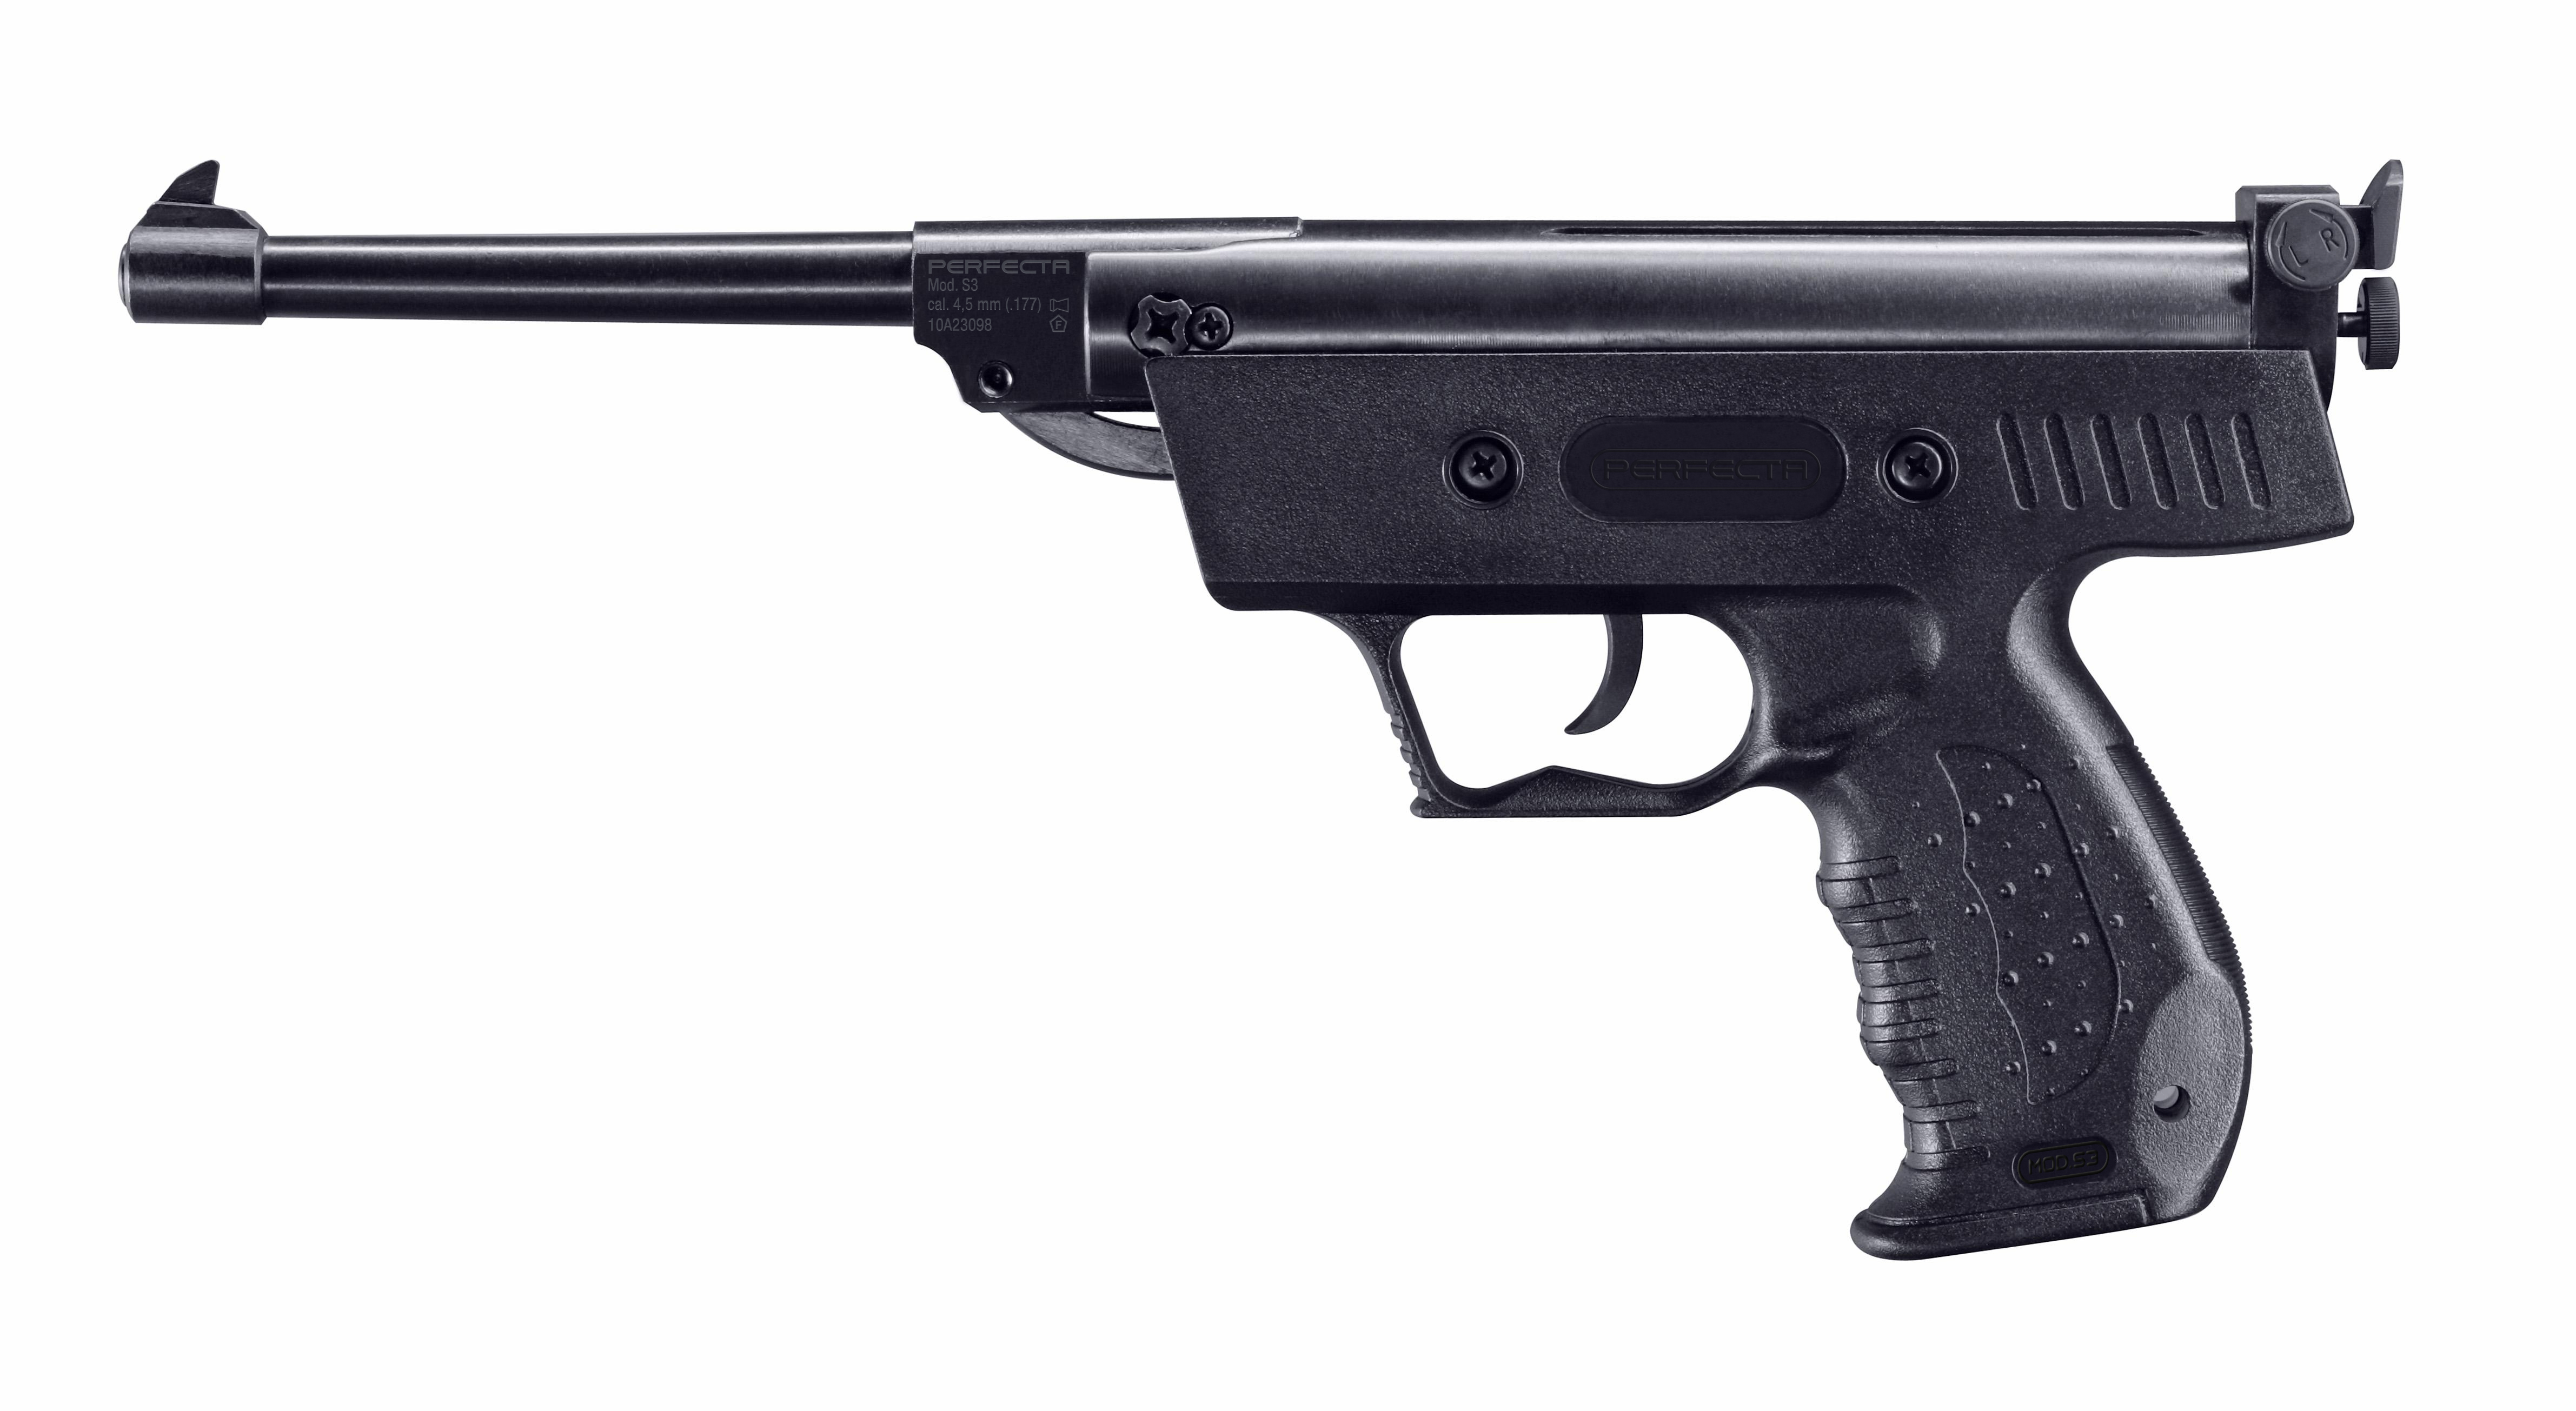 PERFECTA (Umarex) Spring Operated Airgun Pistol S3